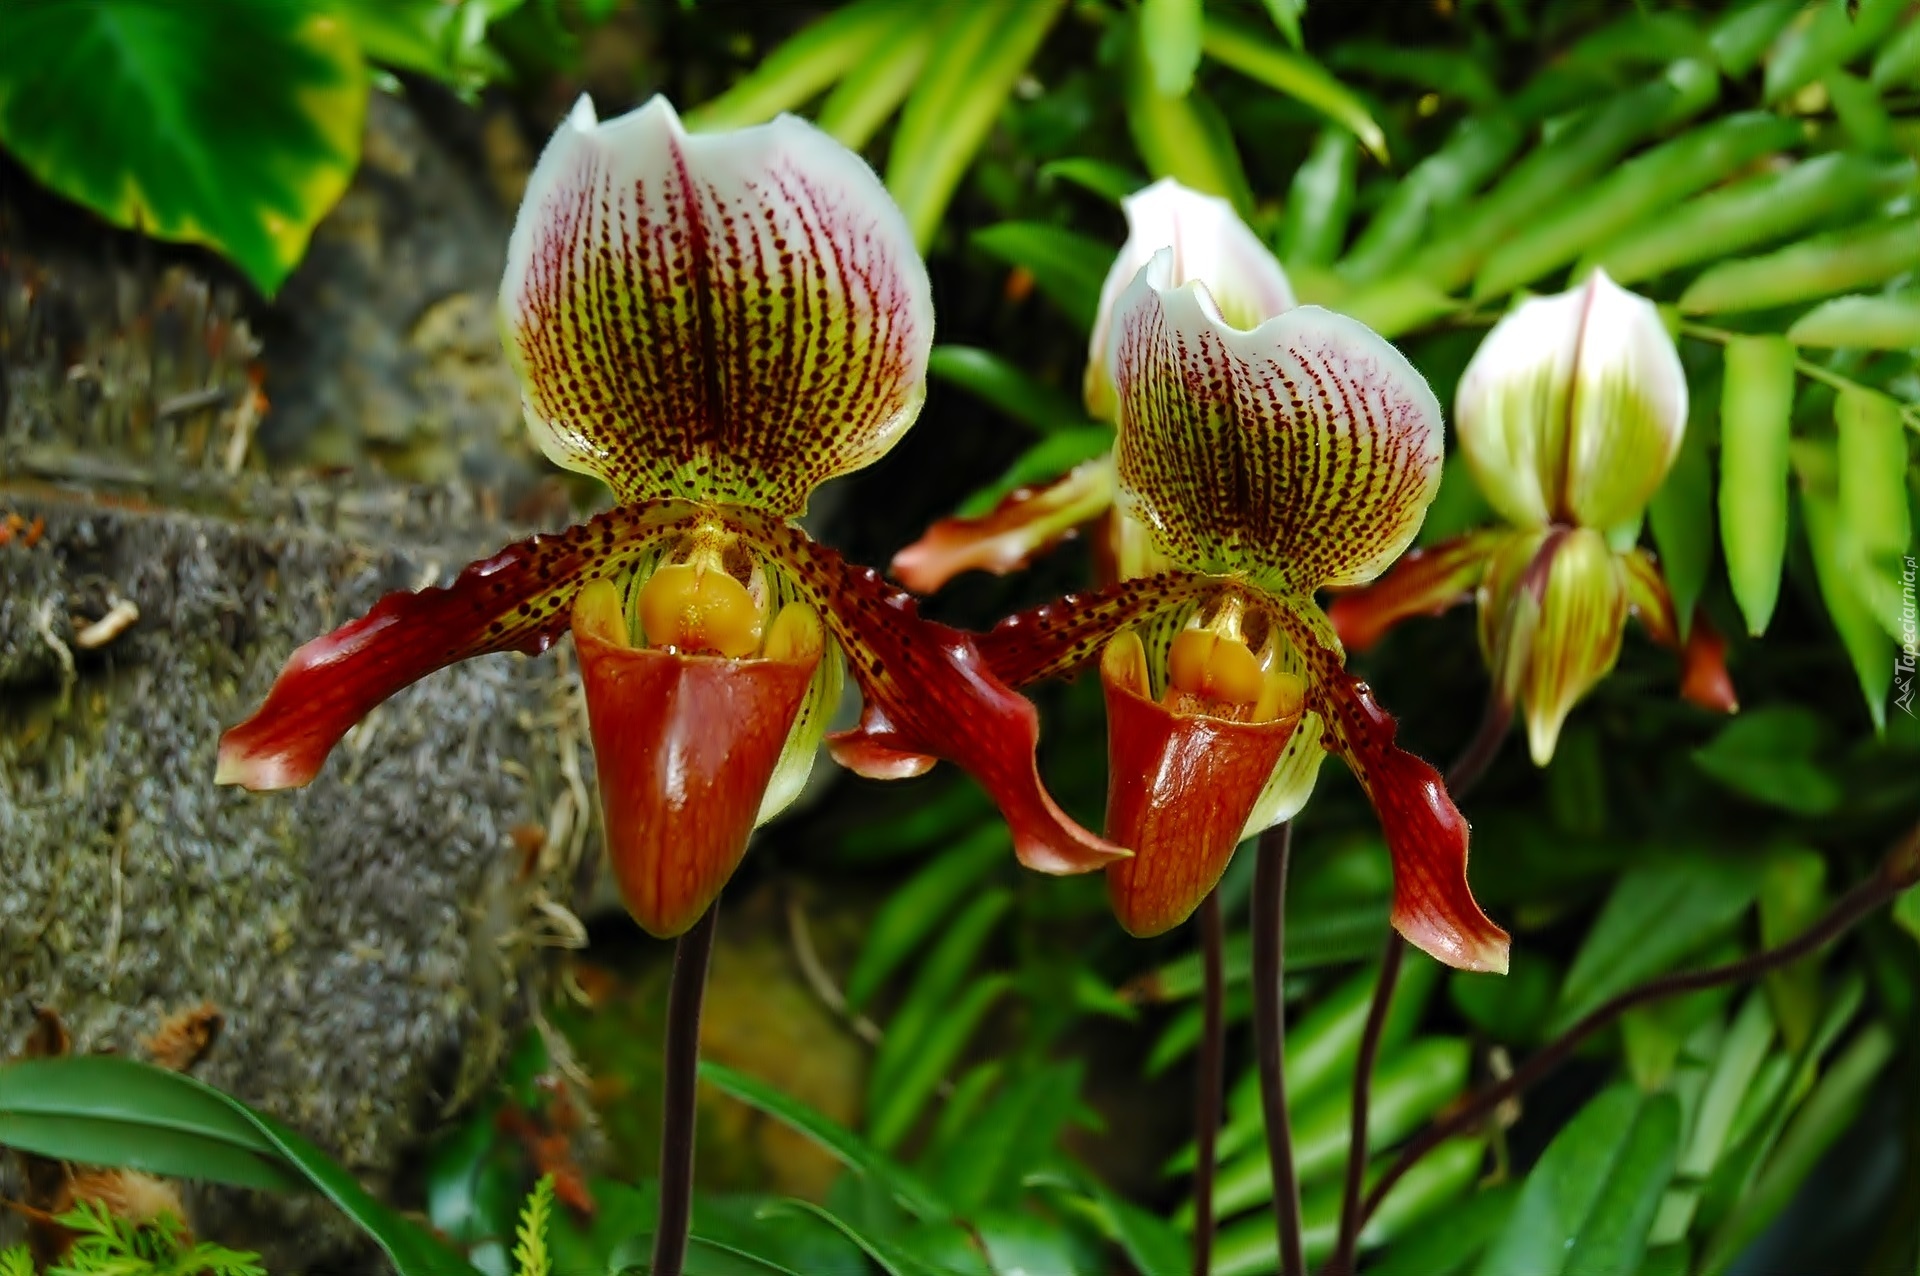 Kwiaty, Orchidee, Makro